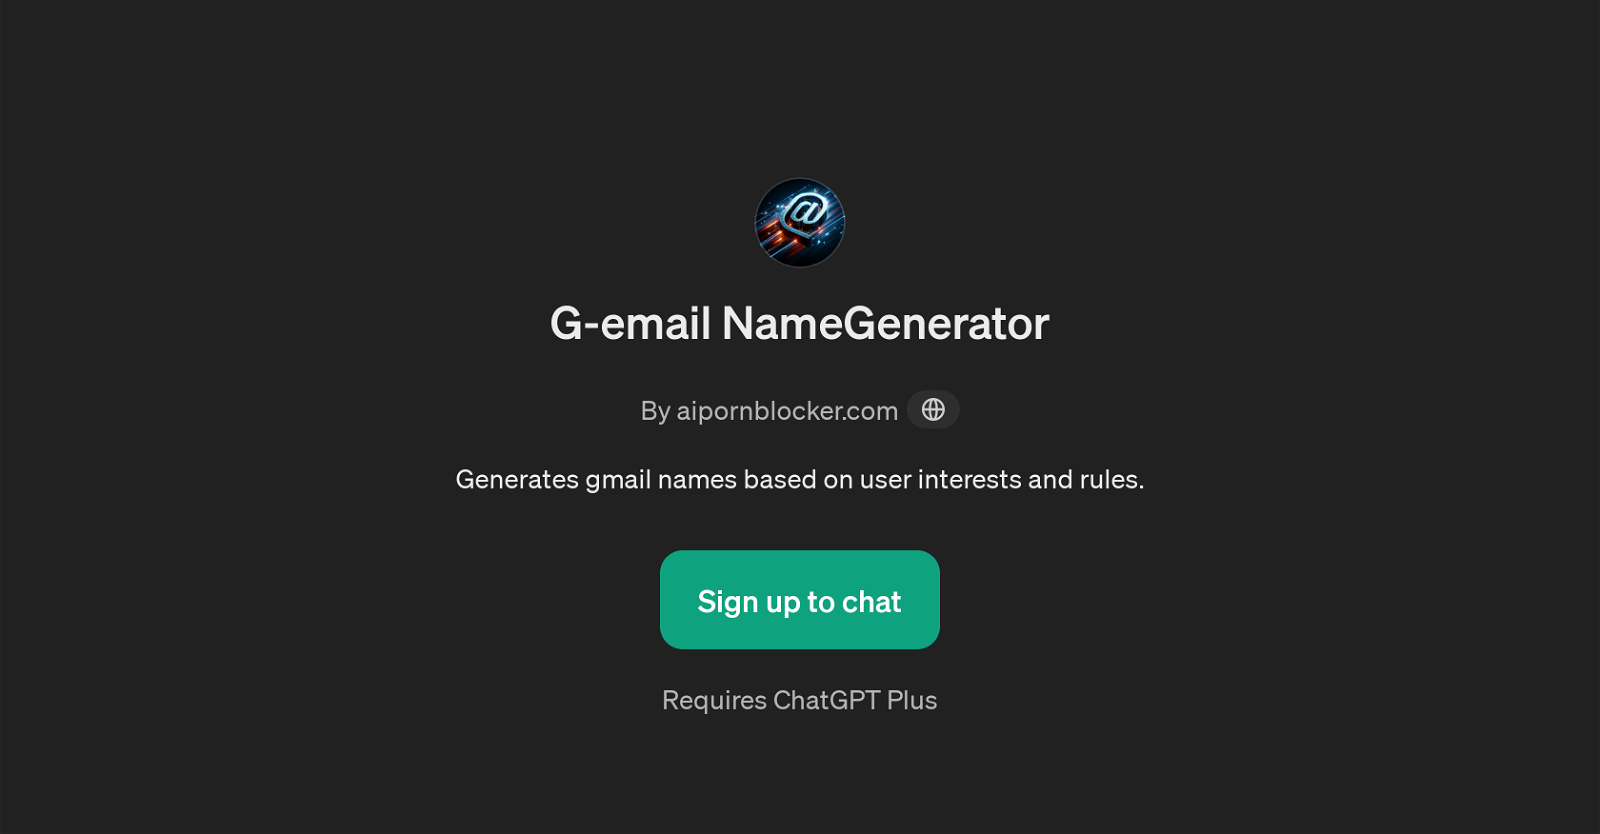 G-email NameGenerator website